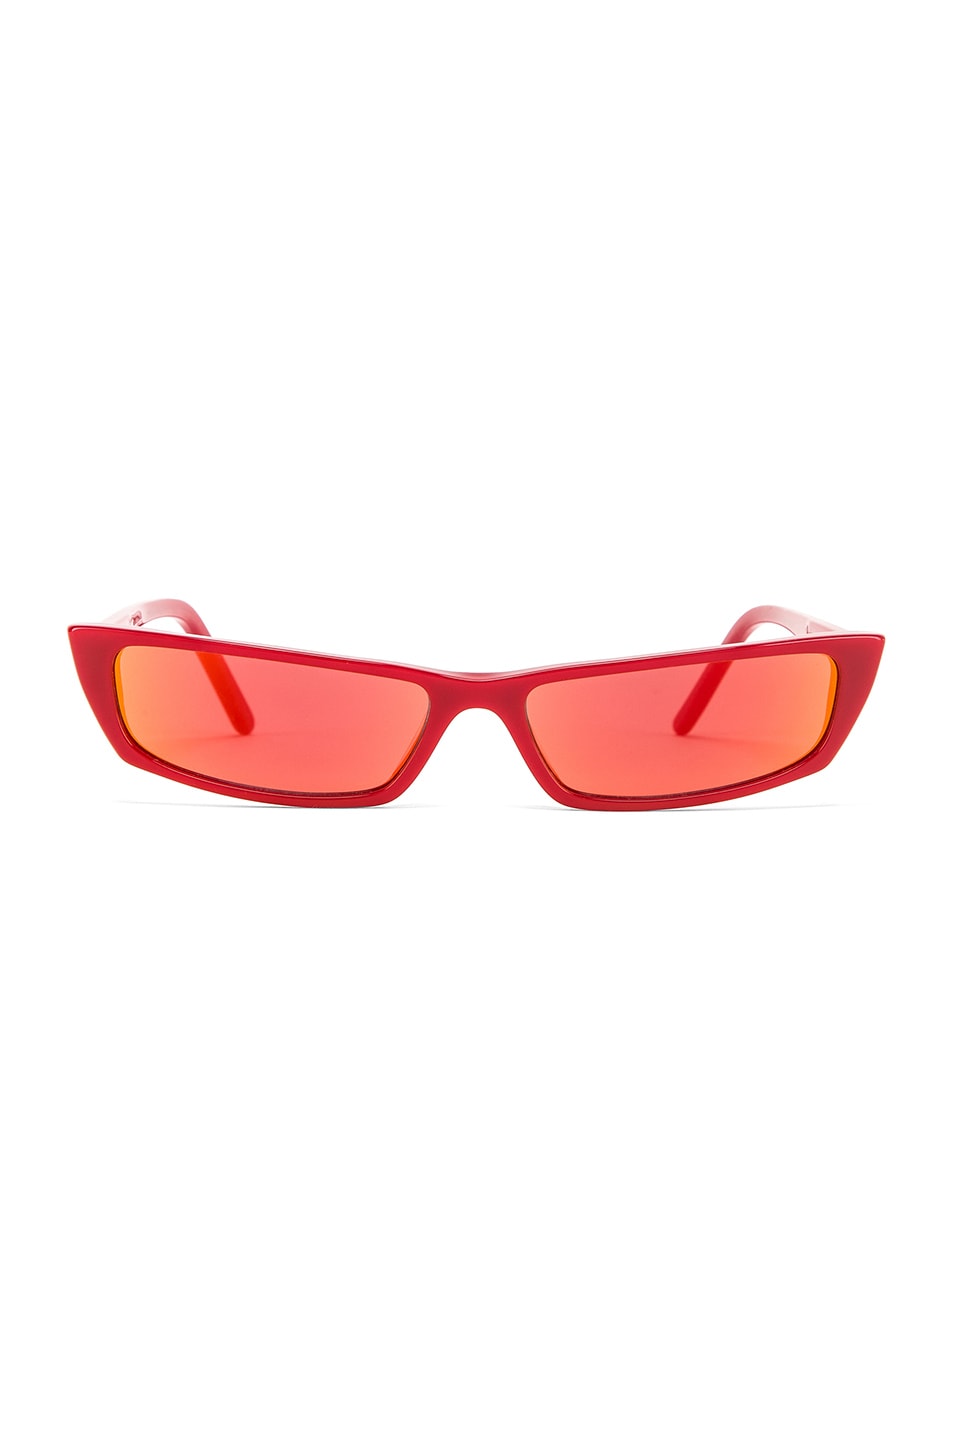 Image 1 of Acne Studios Agar Sunglasses in Red & Orange Mirror